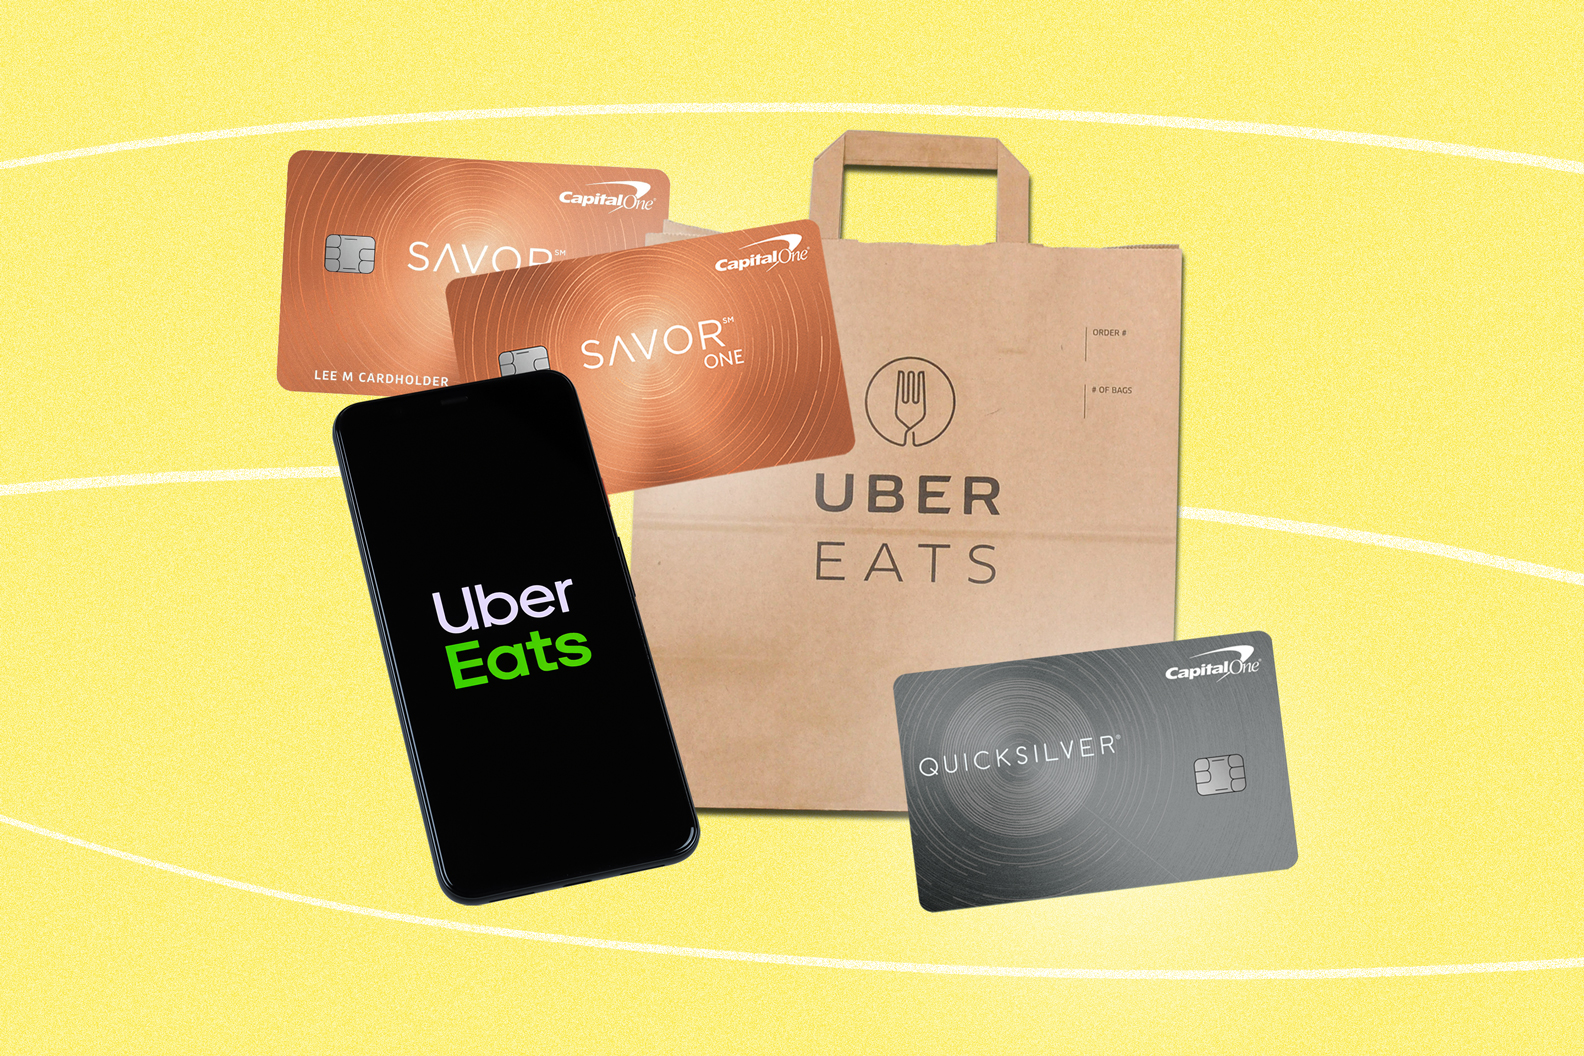 Credit Cards Offering 10% Bonus Cash Back on Uber, Uber Eats